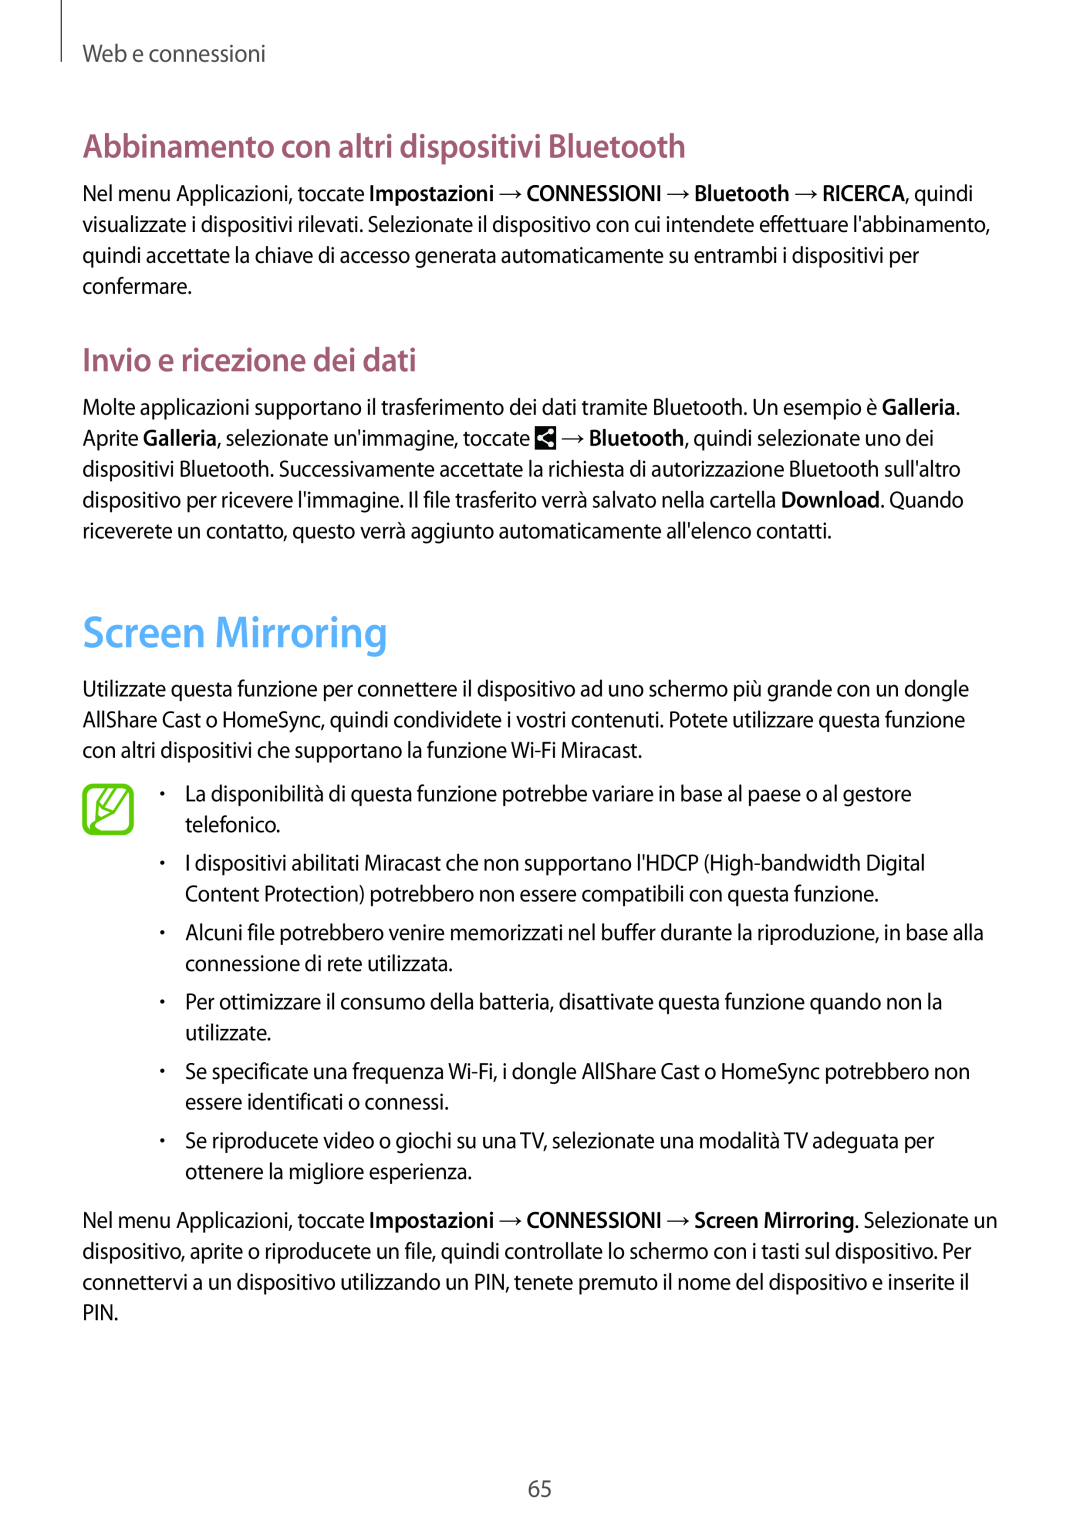 Samsung GT-I9515ZWAPRT manual Screen Mirroring, Abbinamento con altri dispositivi Bluetooth, Invio e ricezione dei dati 